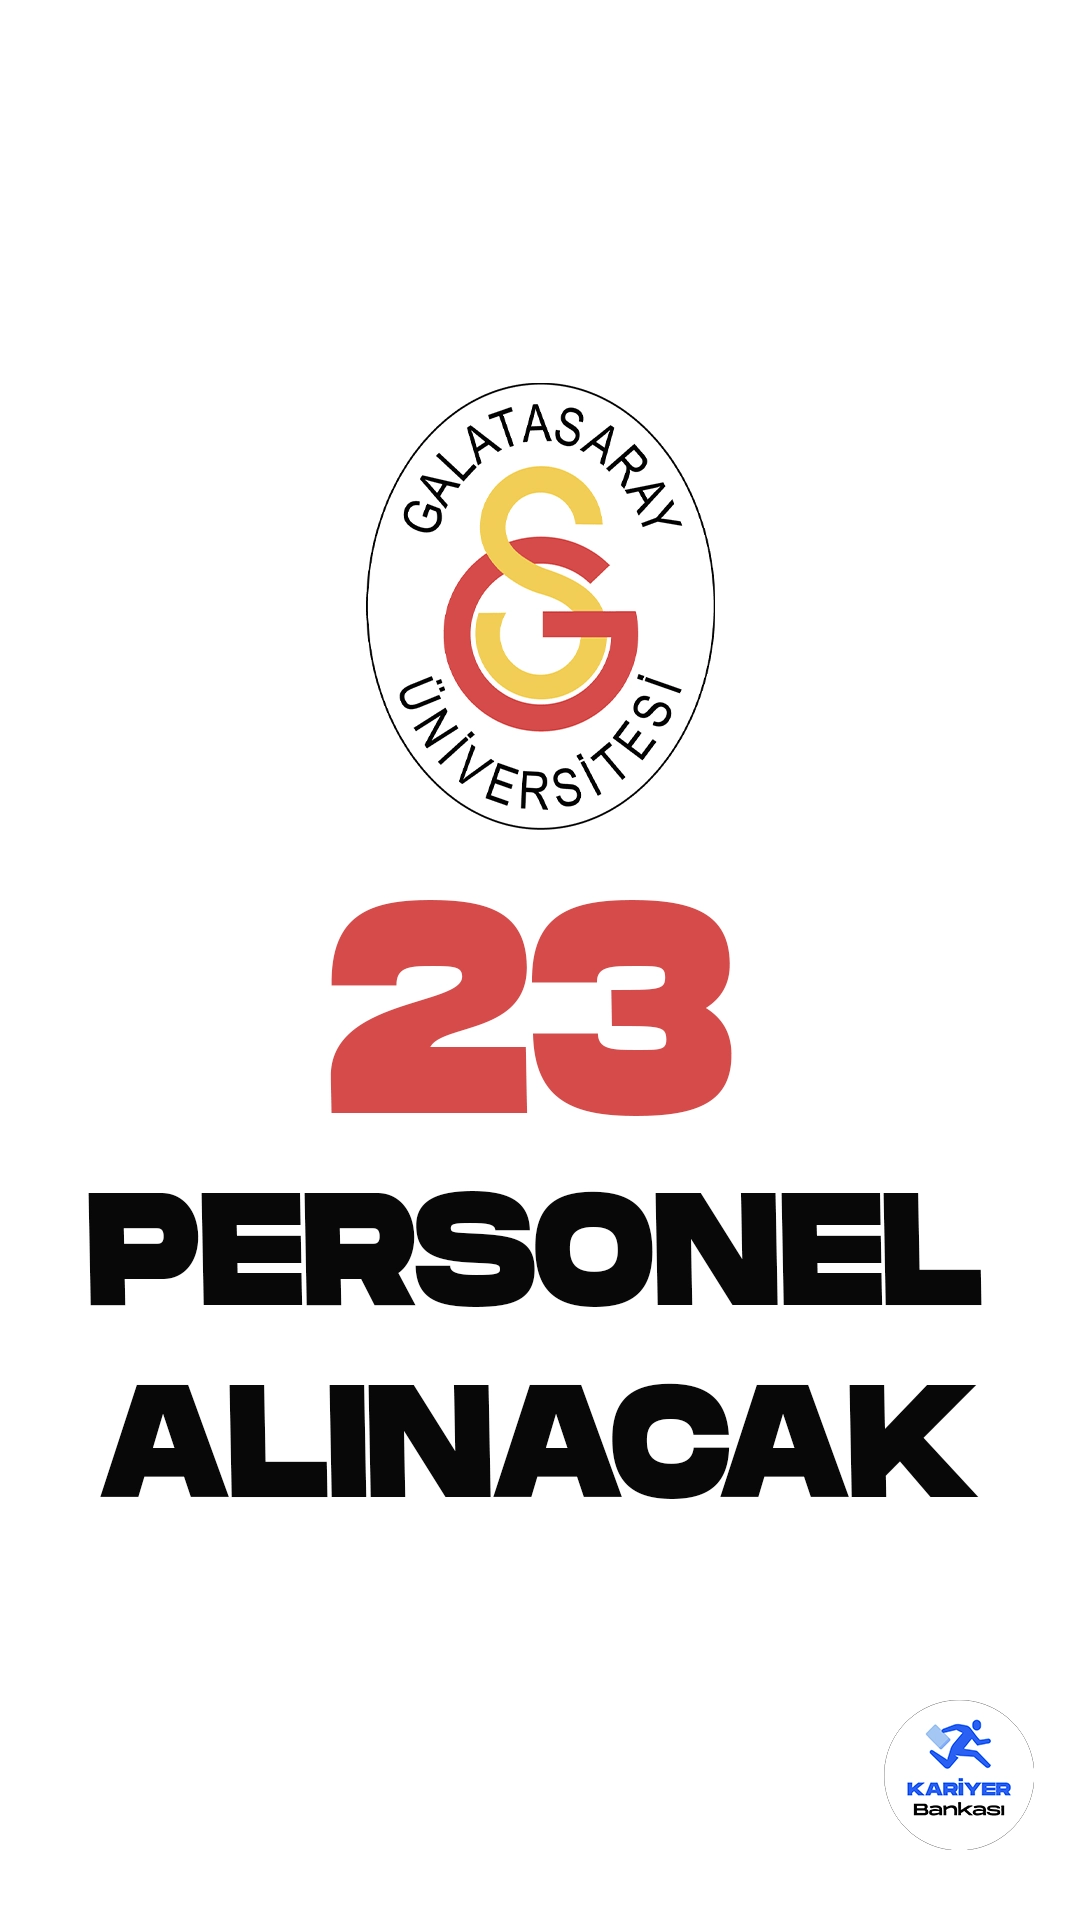 Galatasaray Üniversitesi 23 Personel Alımı Başvuruları Sürüyor. İlgili alım duyurusuna göre, Galatasaray Üniversitesine destek personeli( temizlik görevlisi, bahçıvan, boyacı, elektrikçi) ve büro personeli pozisyonları için sözleşmeli personel alımı yapılacak. Başvurular 12 Ekim 2023 tarihine kadar sürecek. 